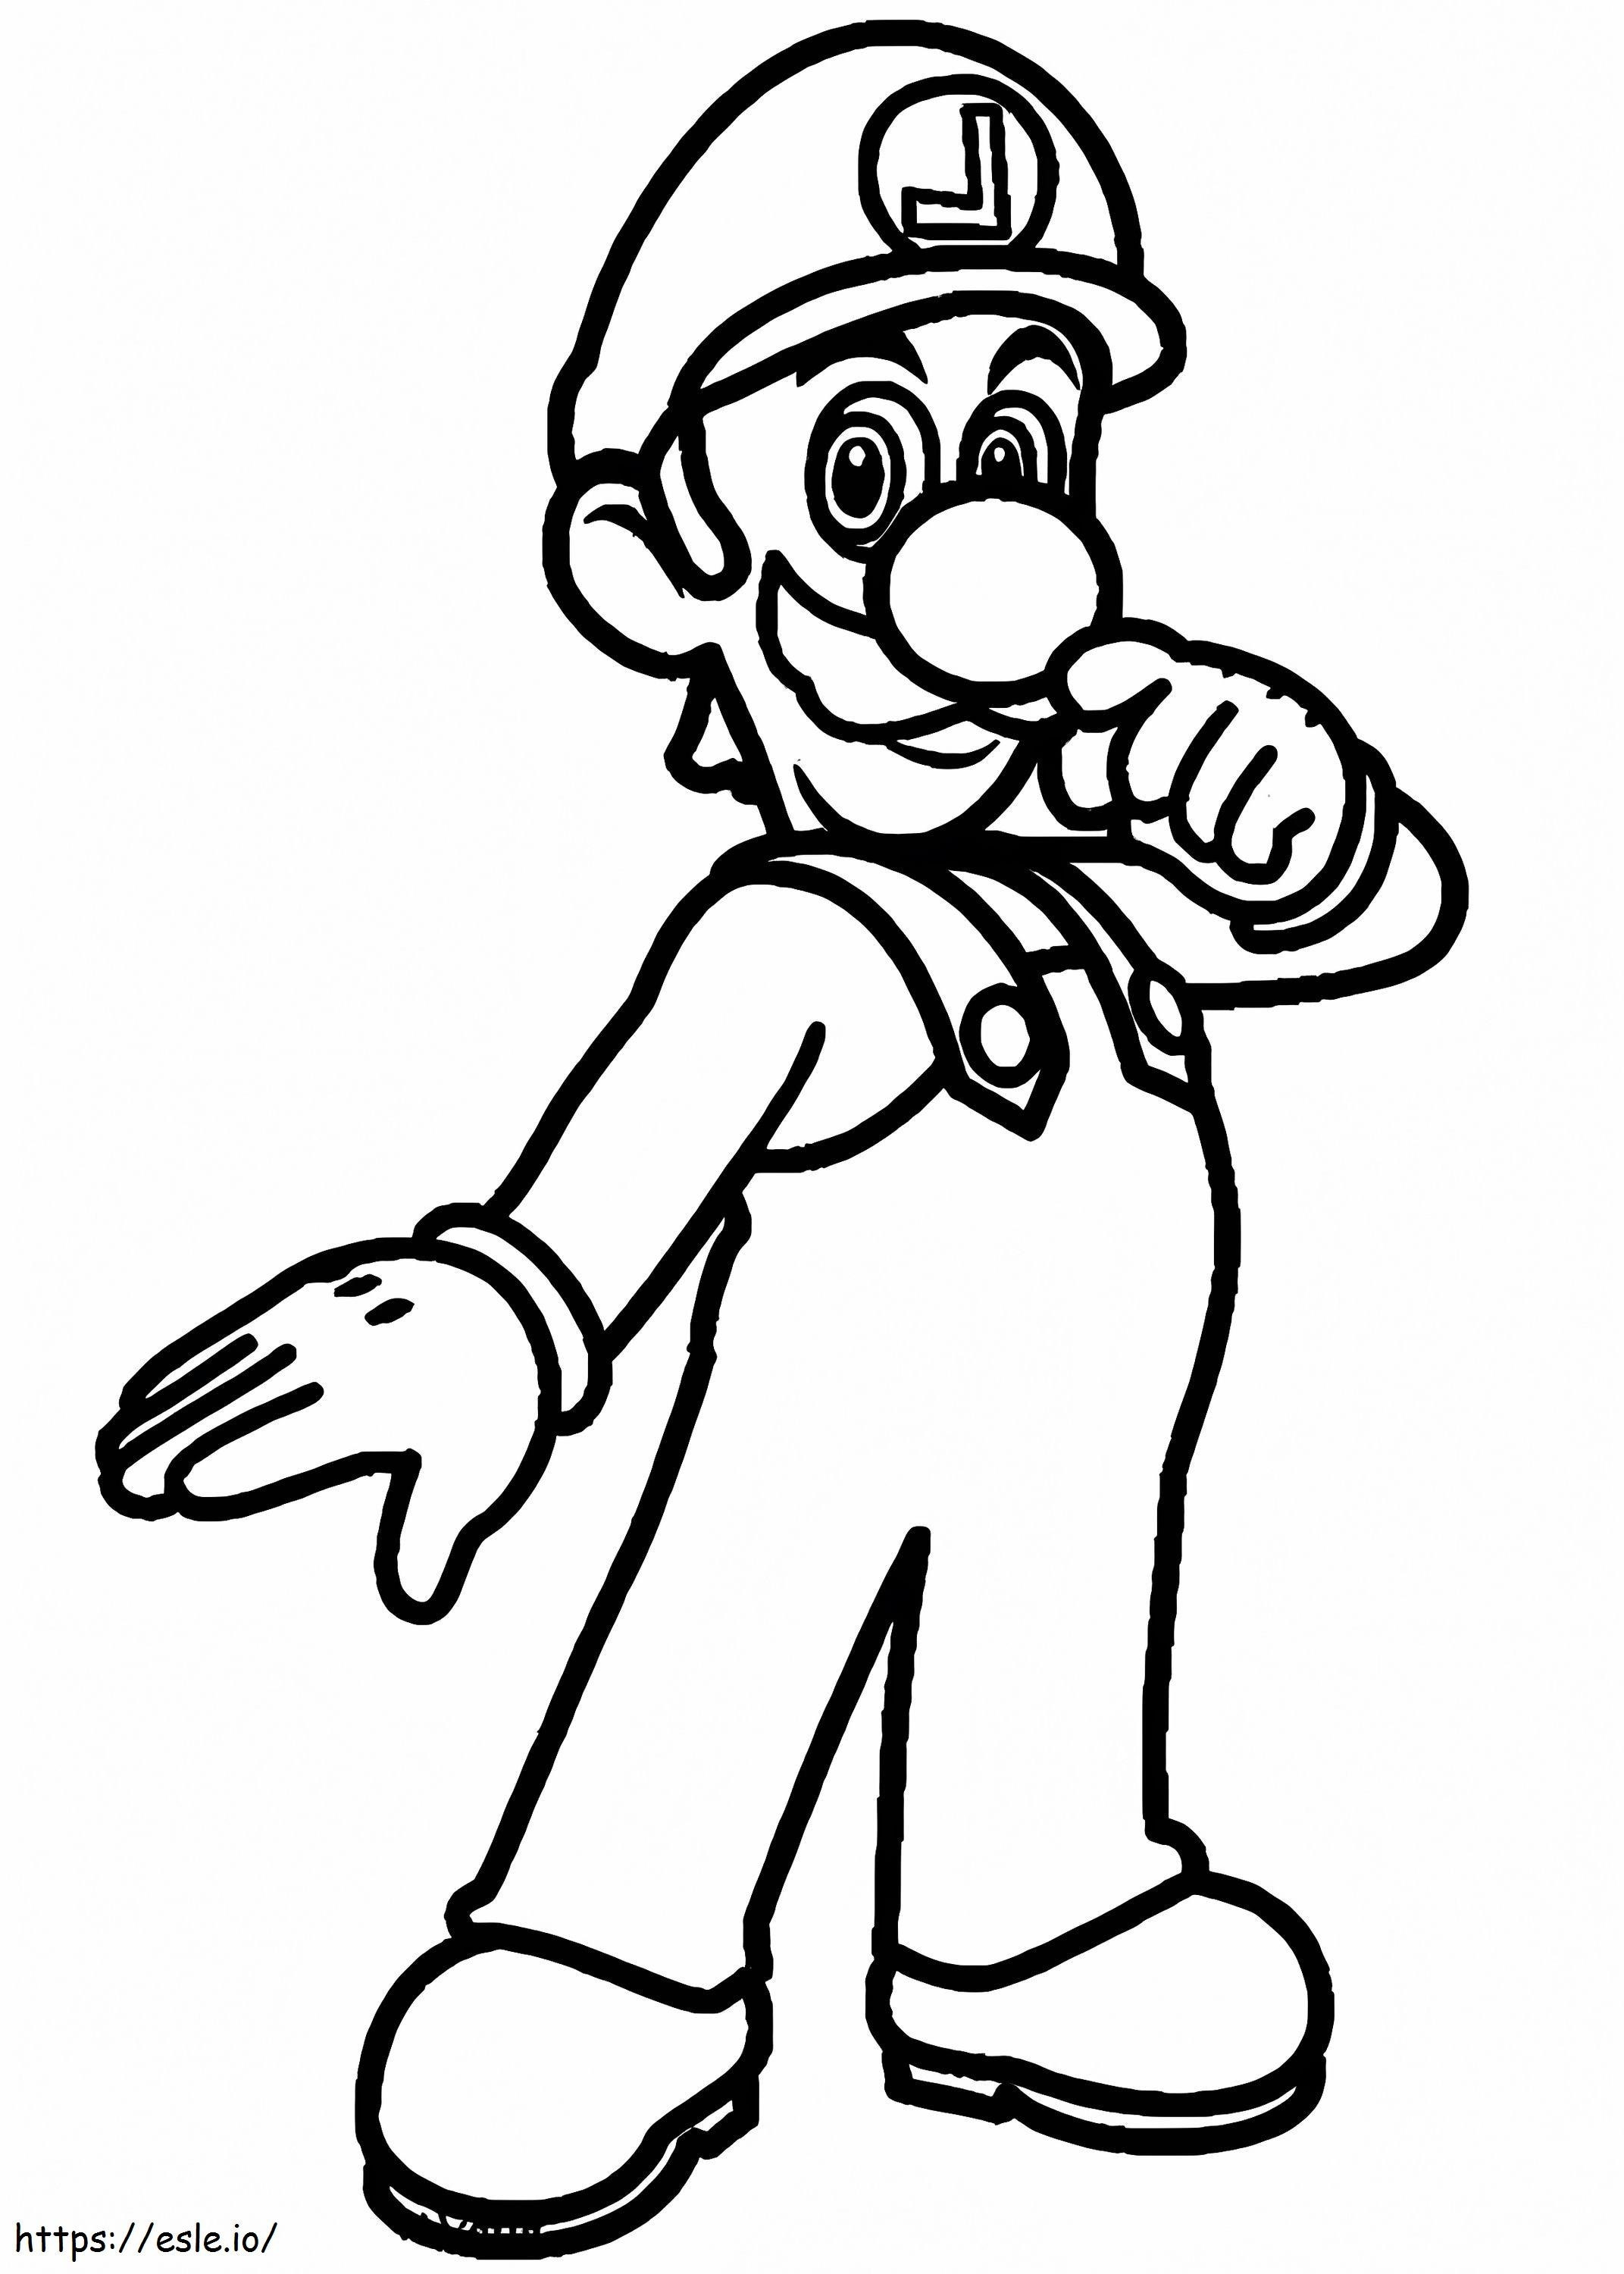 Luigi De Super Mario 3 kleurplaat kleurplaat